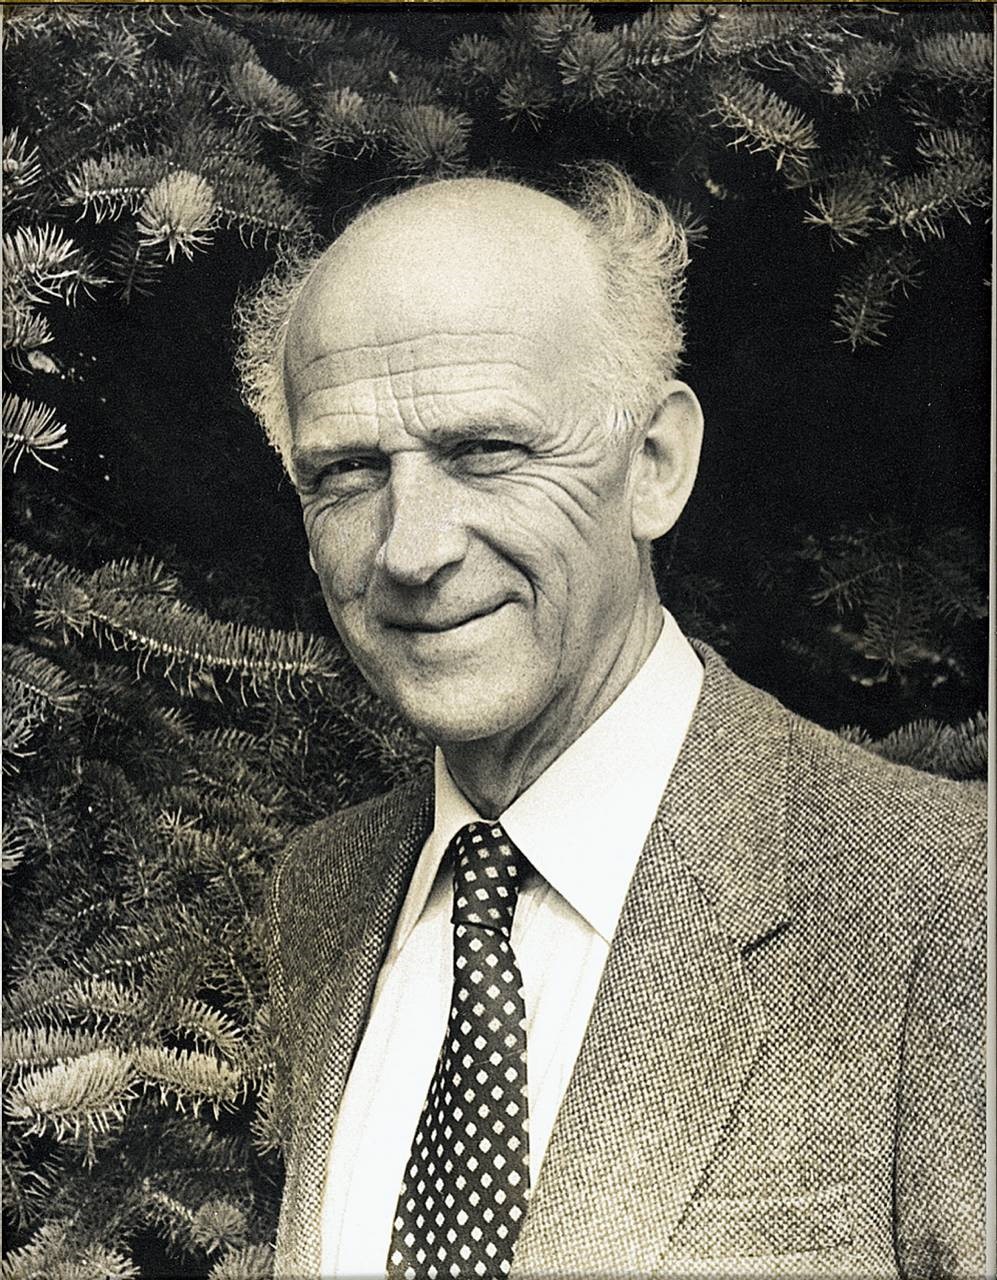  Sivilingeniør Halvor Skjelmerud (1912 - 1999) ble instituttets første direktør, og kom fra stillingen med å få hjem Norges andel av de tyske industrielle krigserstatninger. 